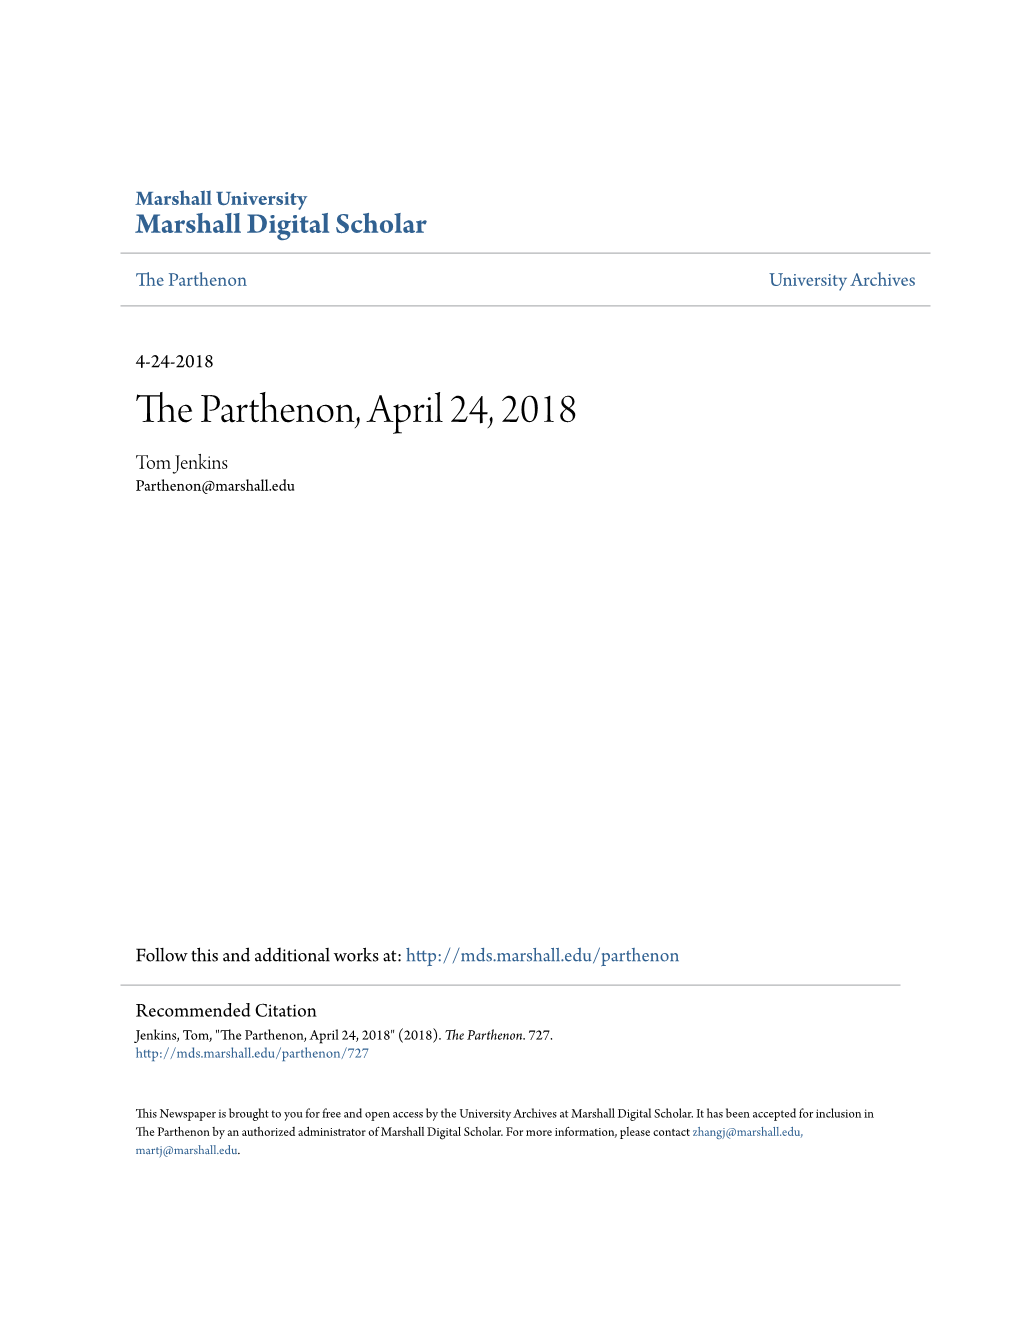 The Parthenon, April 24, 2018